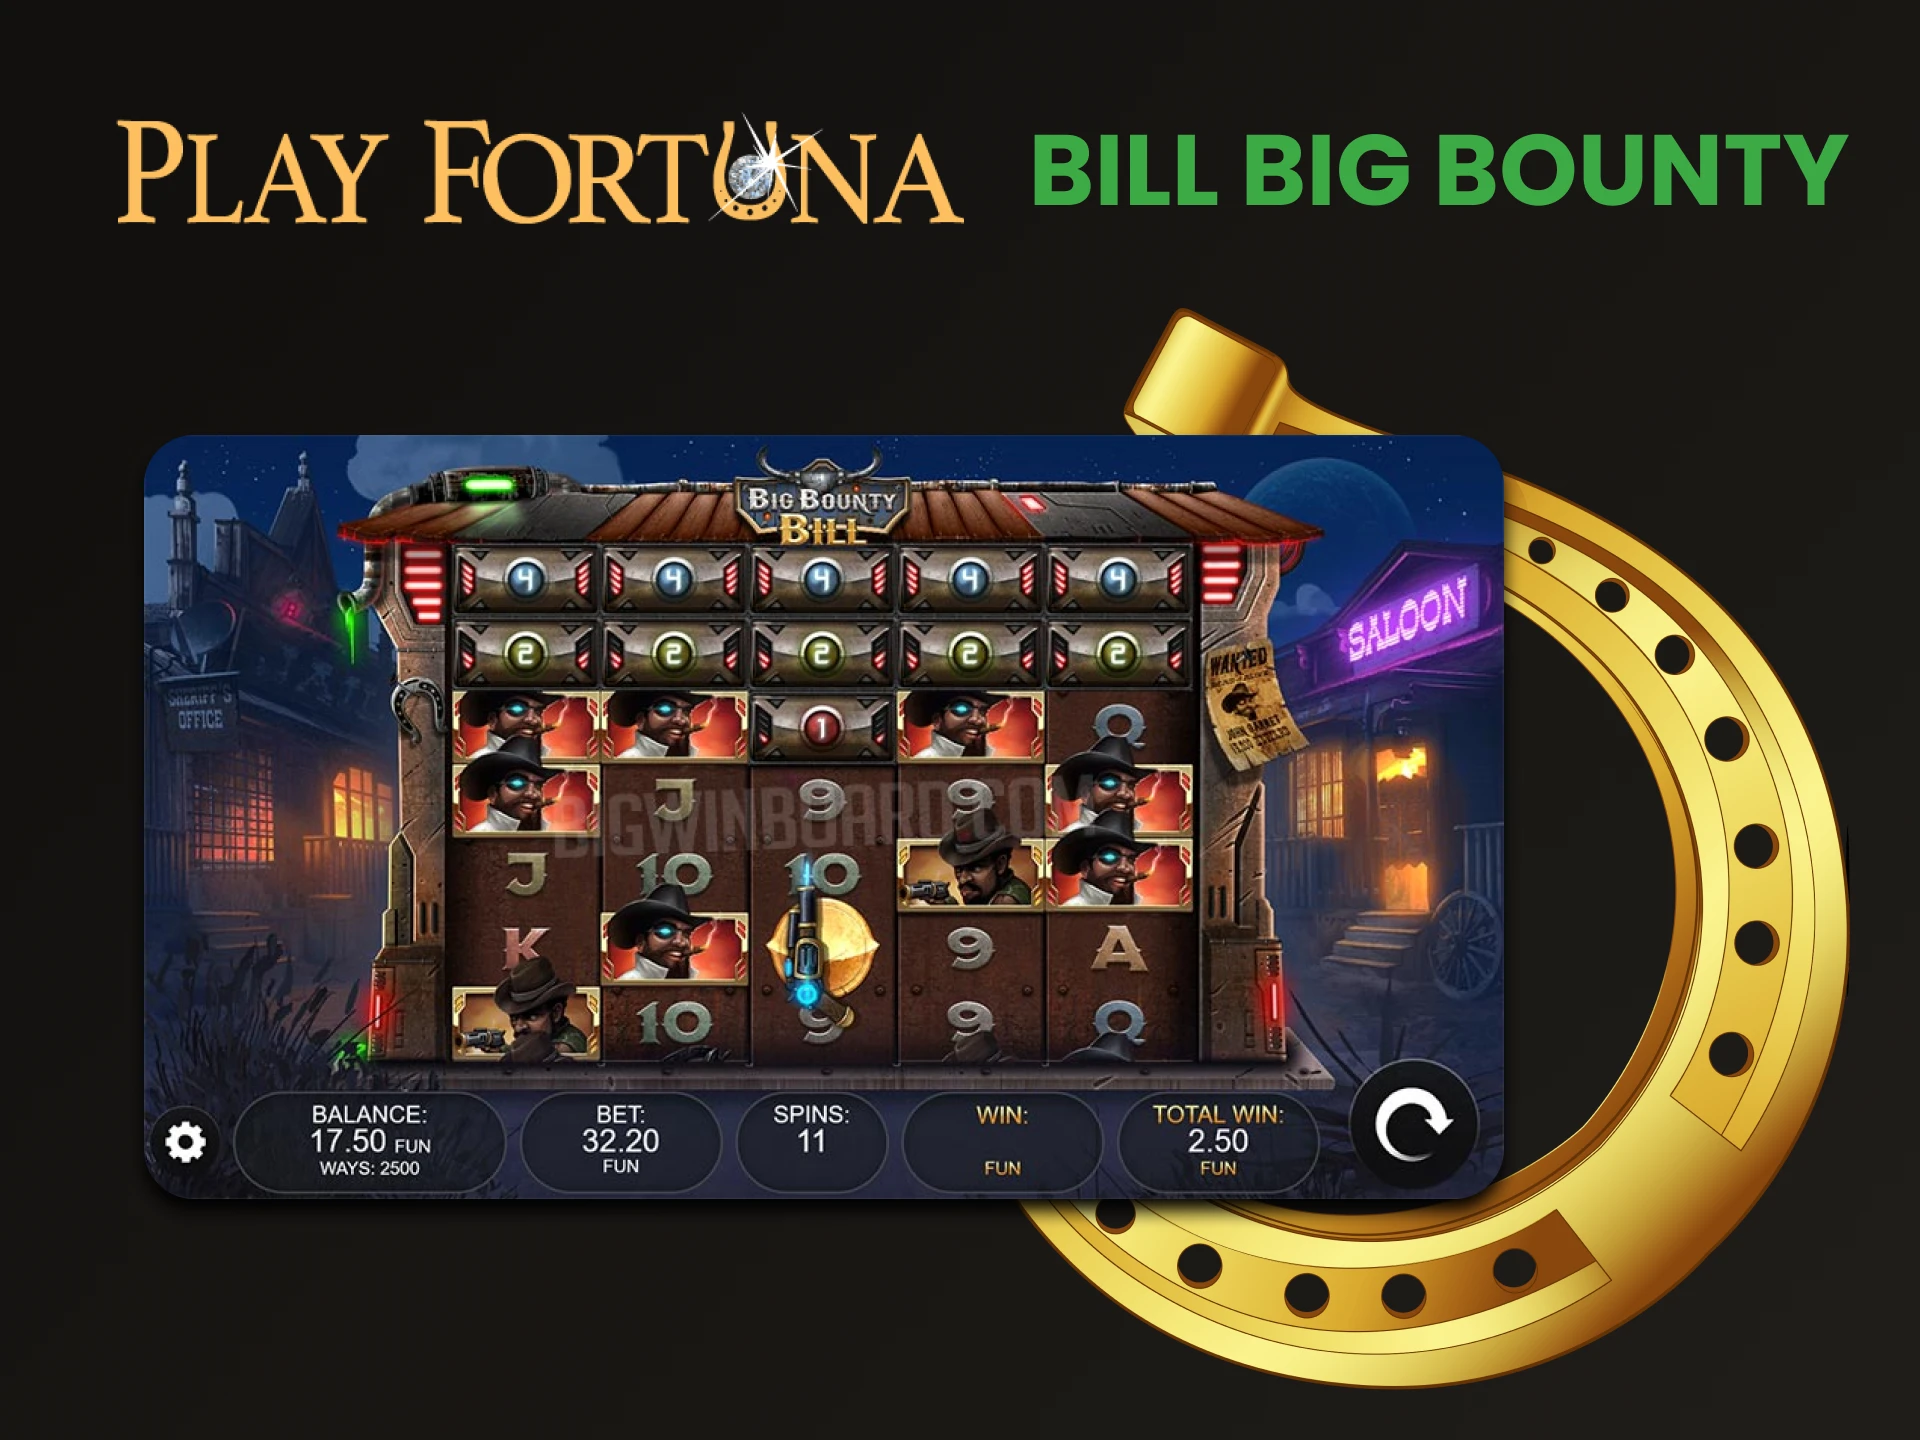 Aconselhamos você a escolher o jogo Bill Big Bounty nos slots do Play Fortuna.